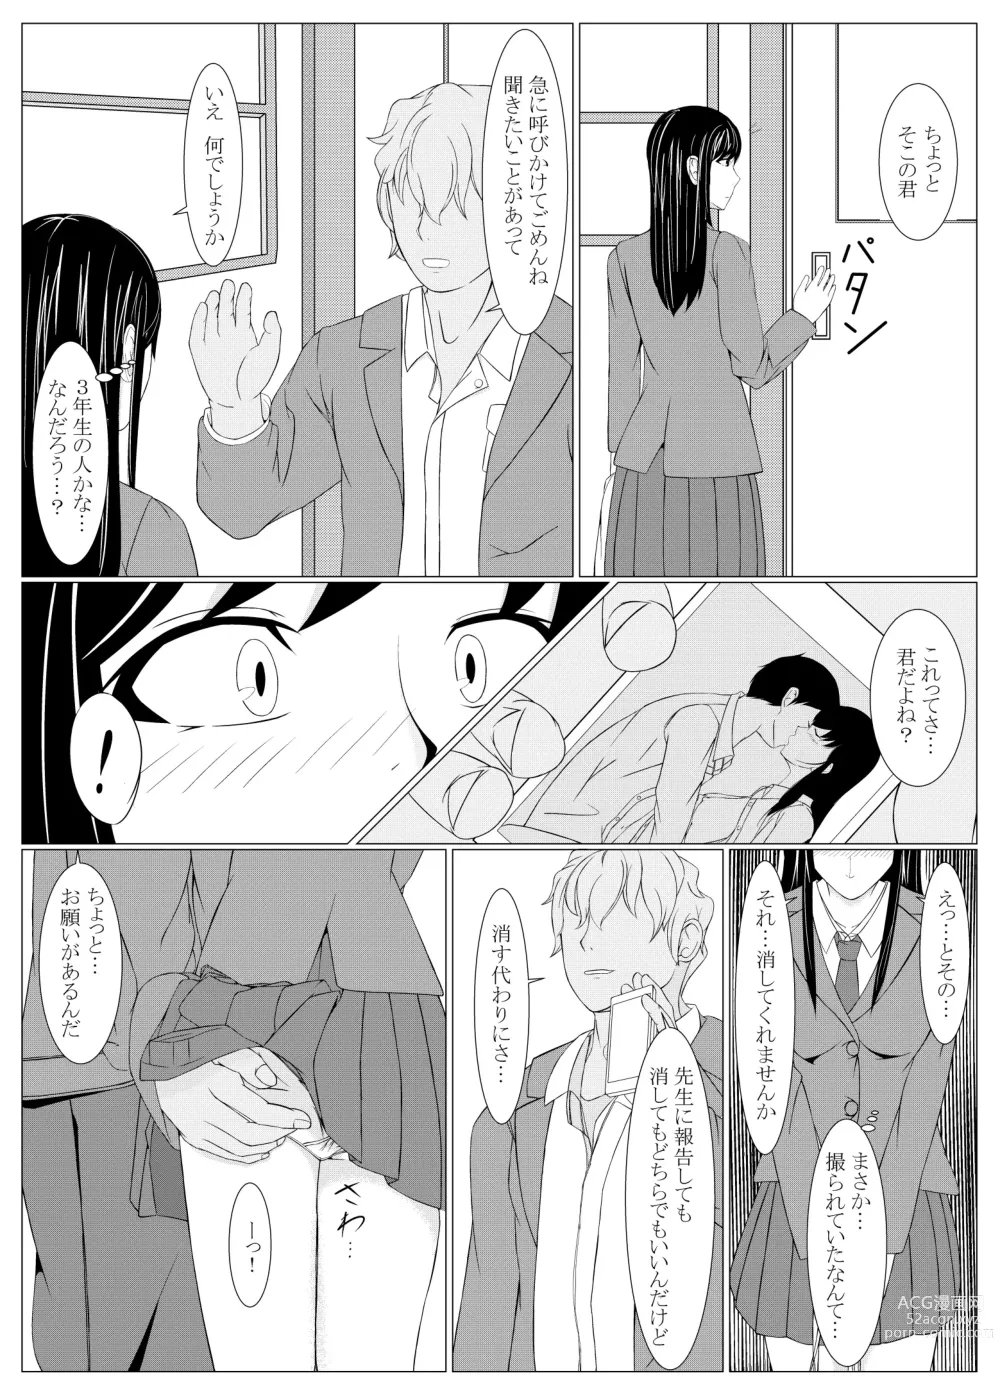 Page 8 of doujinshi Kare wa Shiranai Yogosareta Watashi